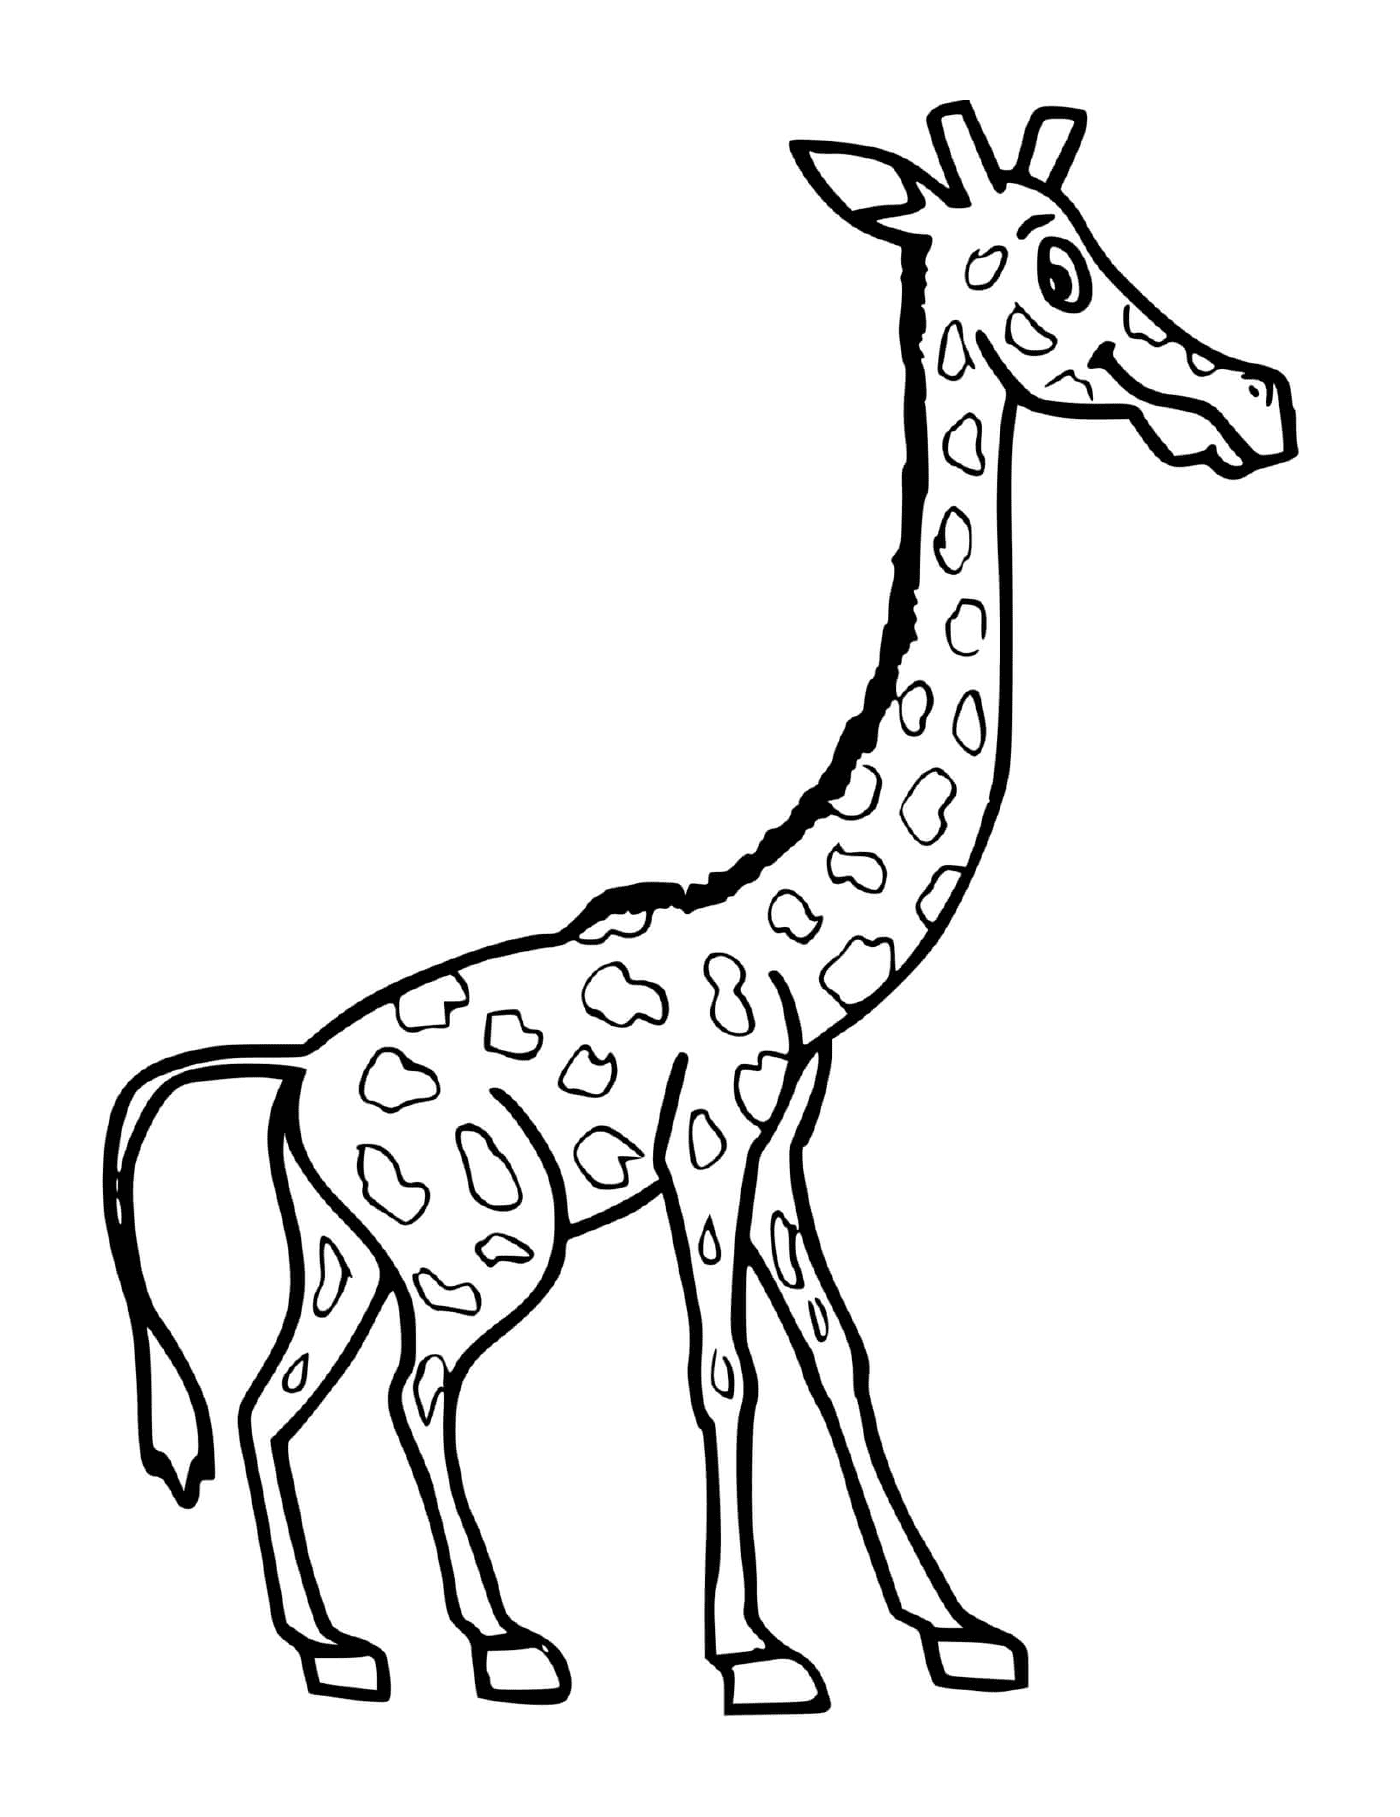  A great giraffe 